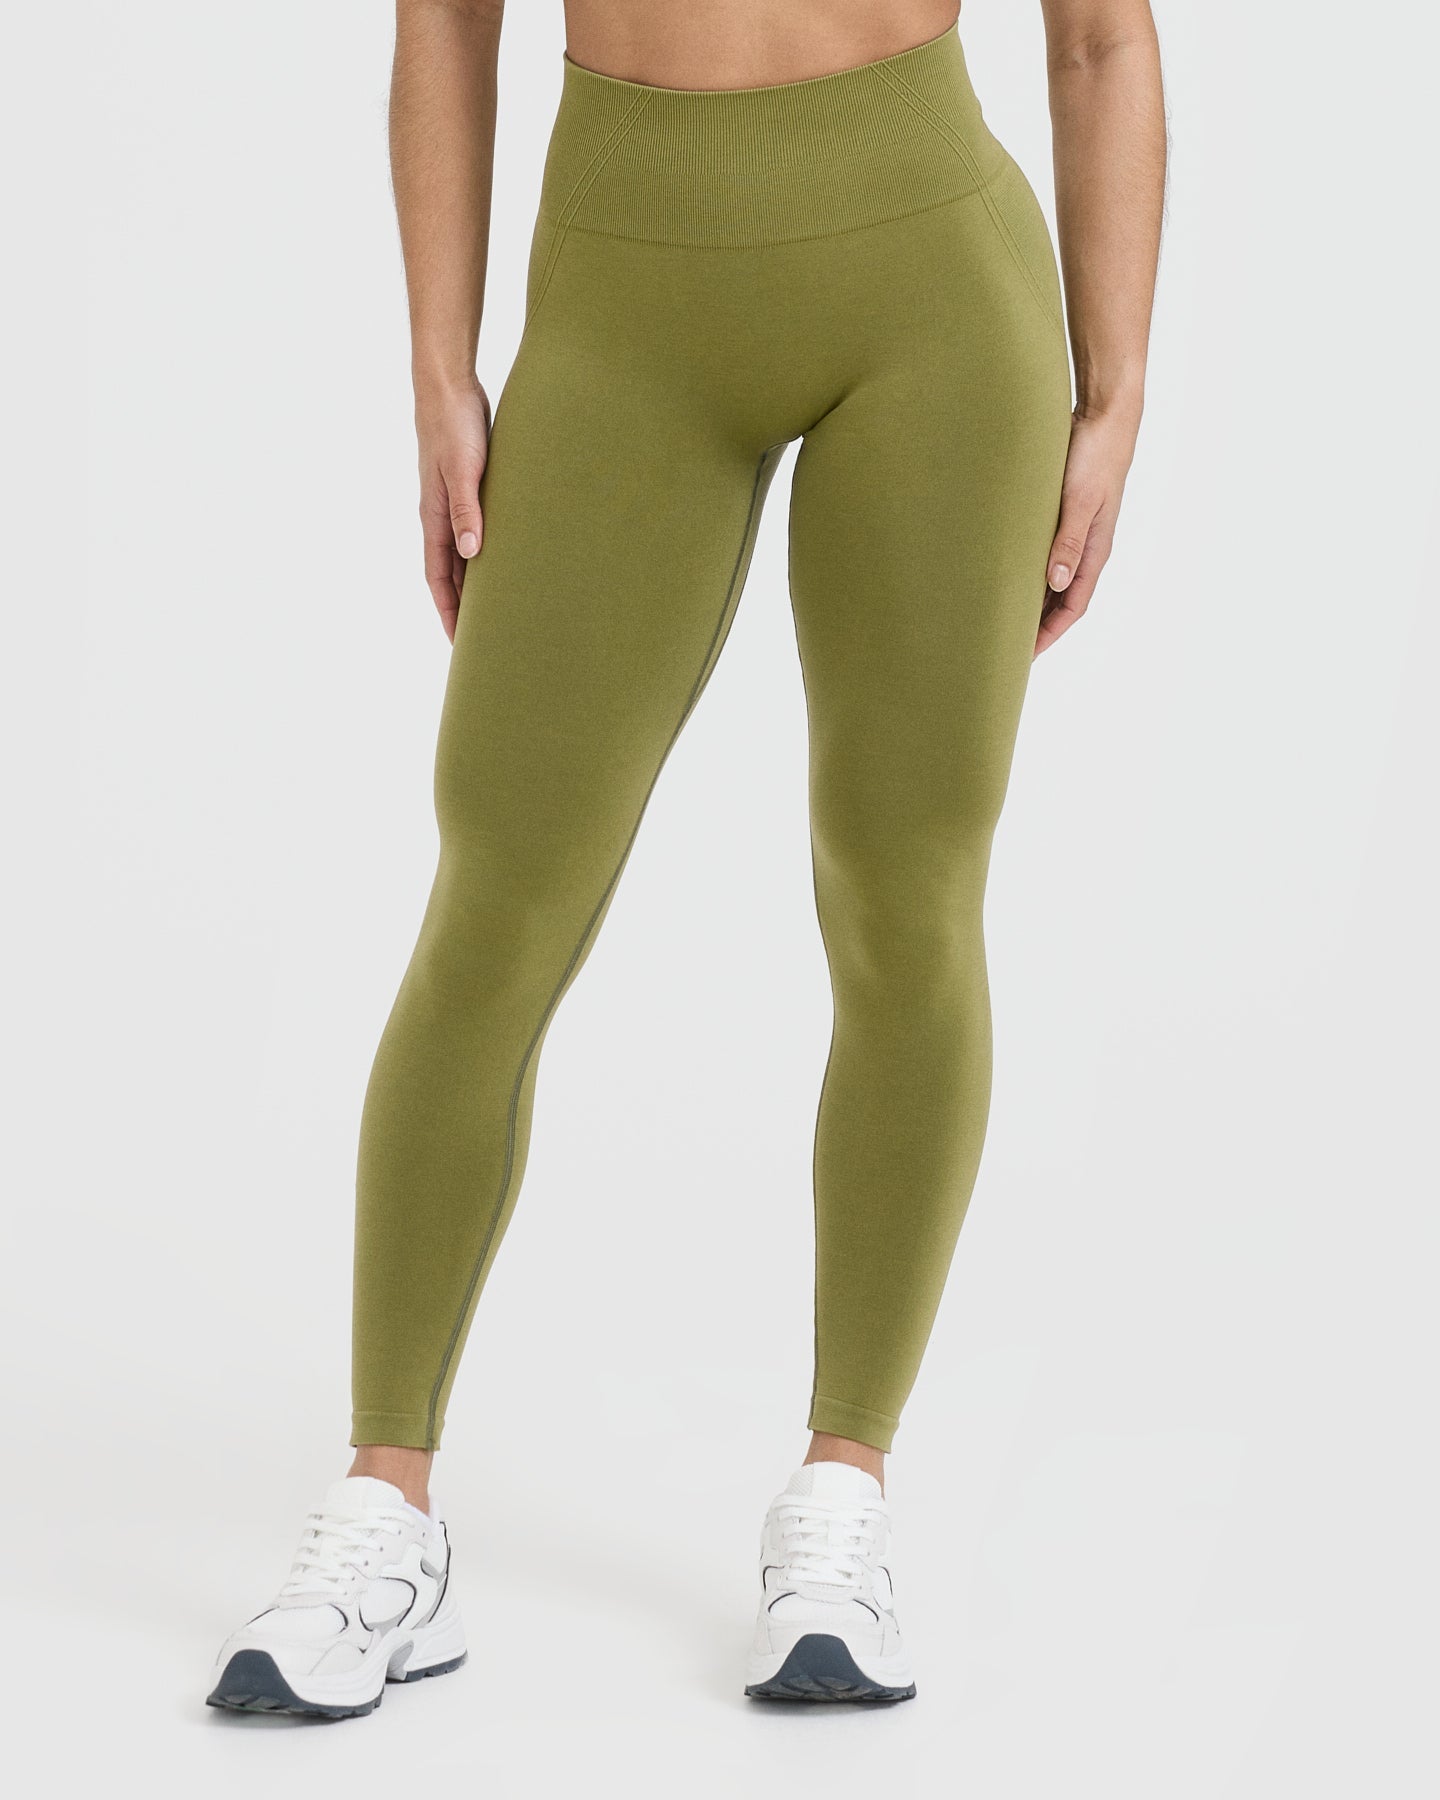 Seamless Gym Leggings - Olive Green Women's